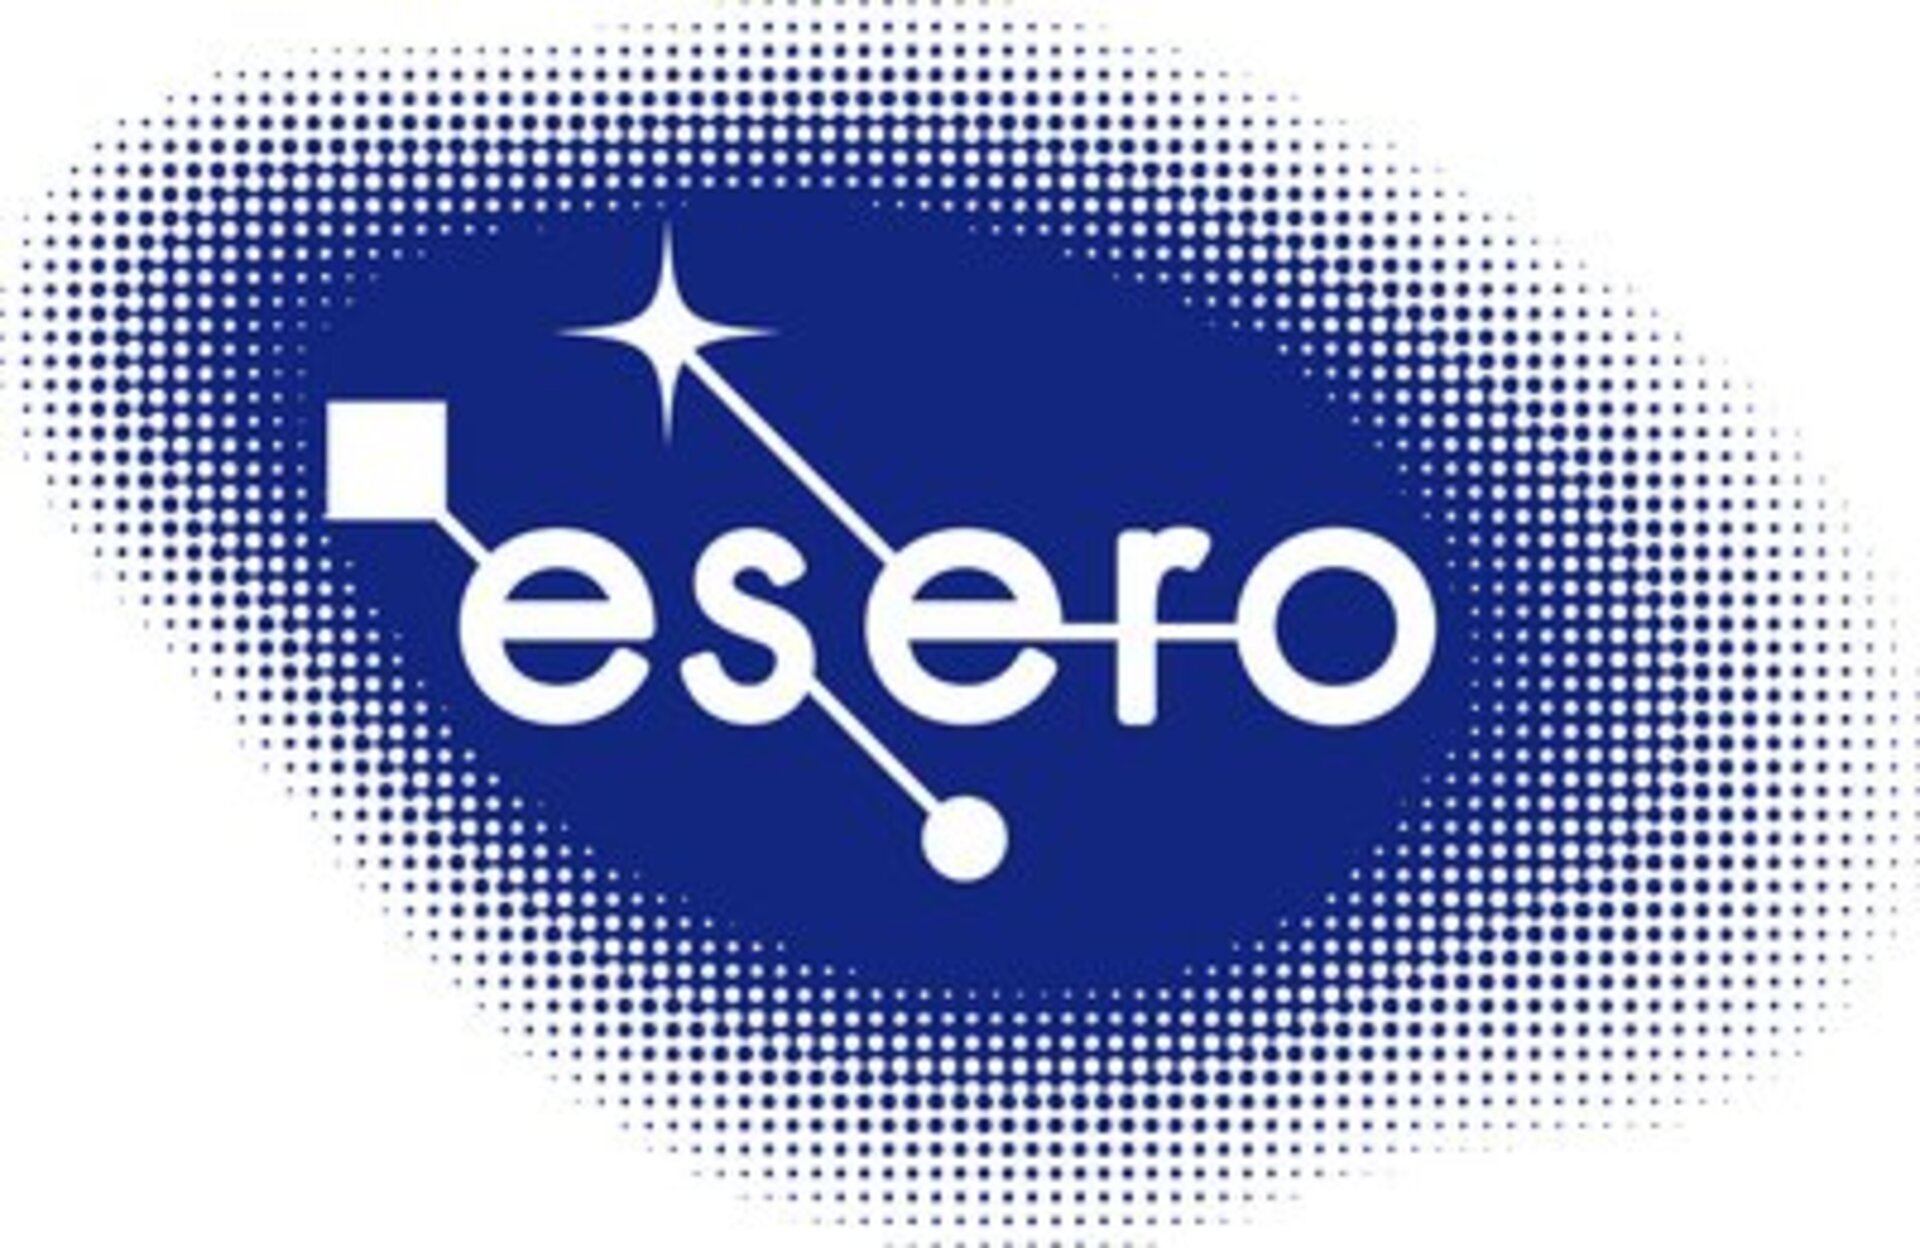 ESERO er et av ESAs internasjonale utdanningsprosjekter